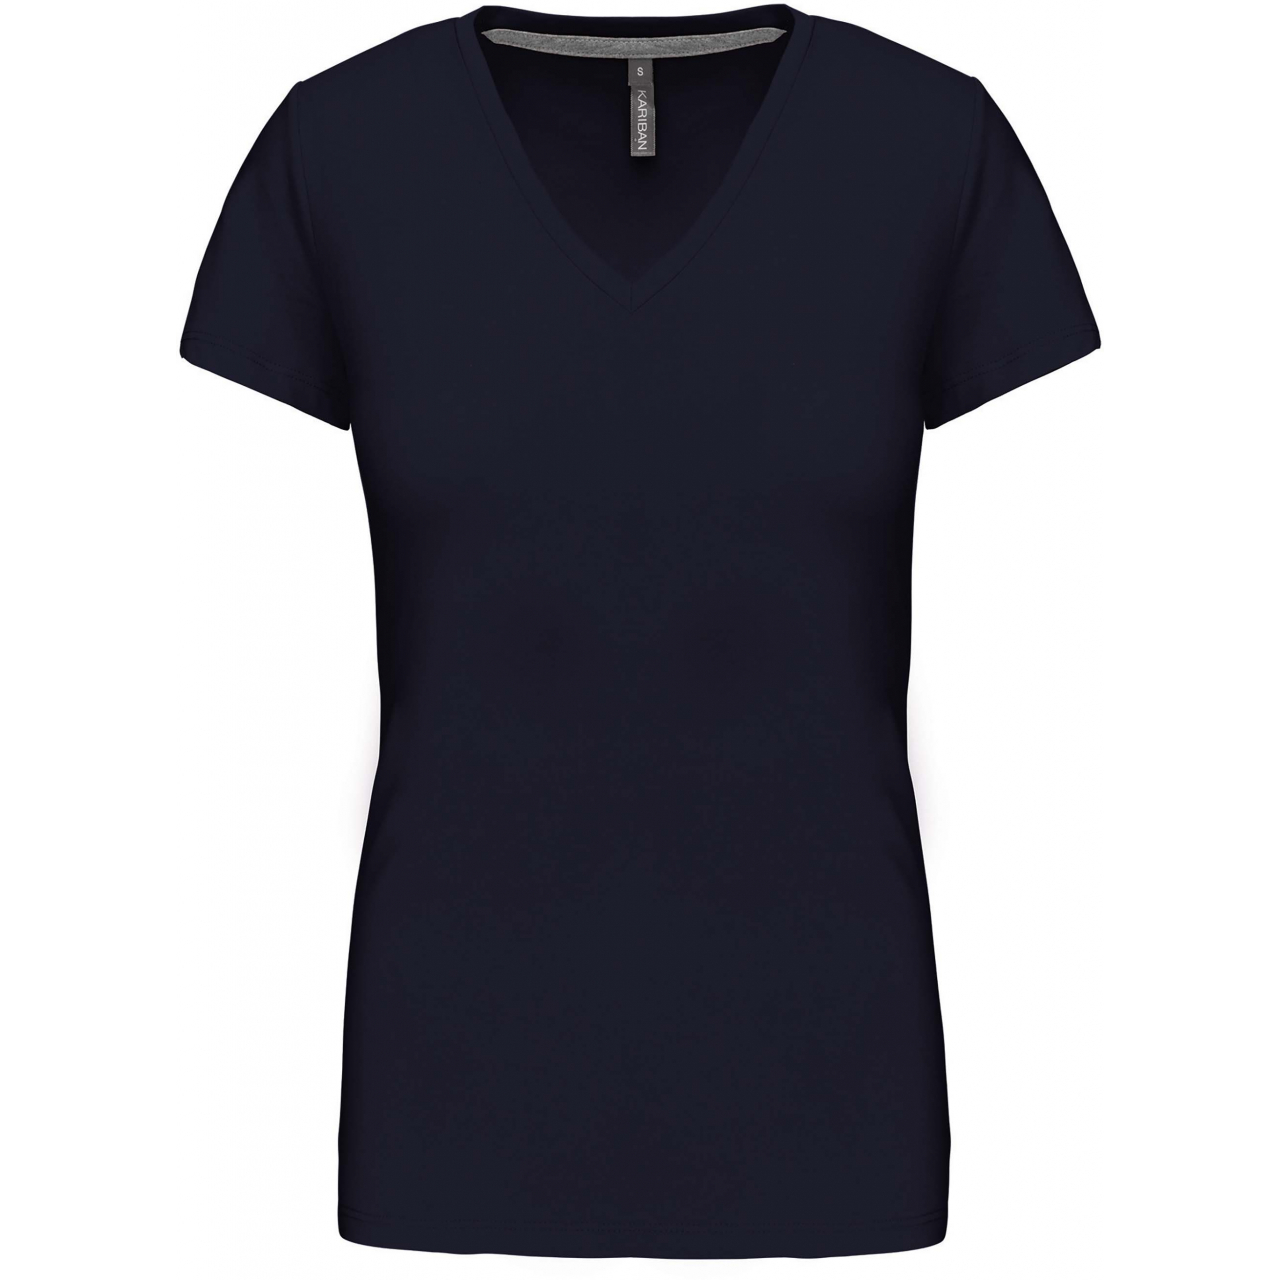 Dámské tričko Kariban V-neck s krátkým rukávem - navy, XL